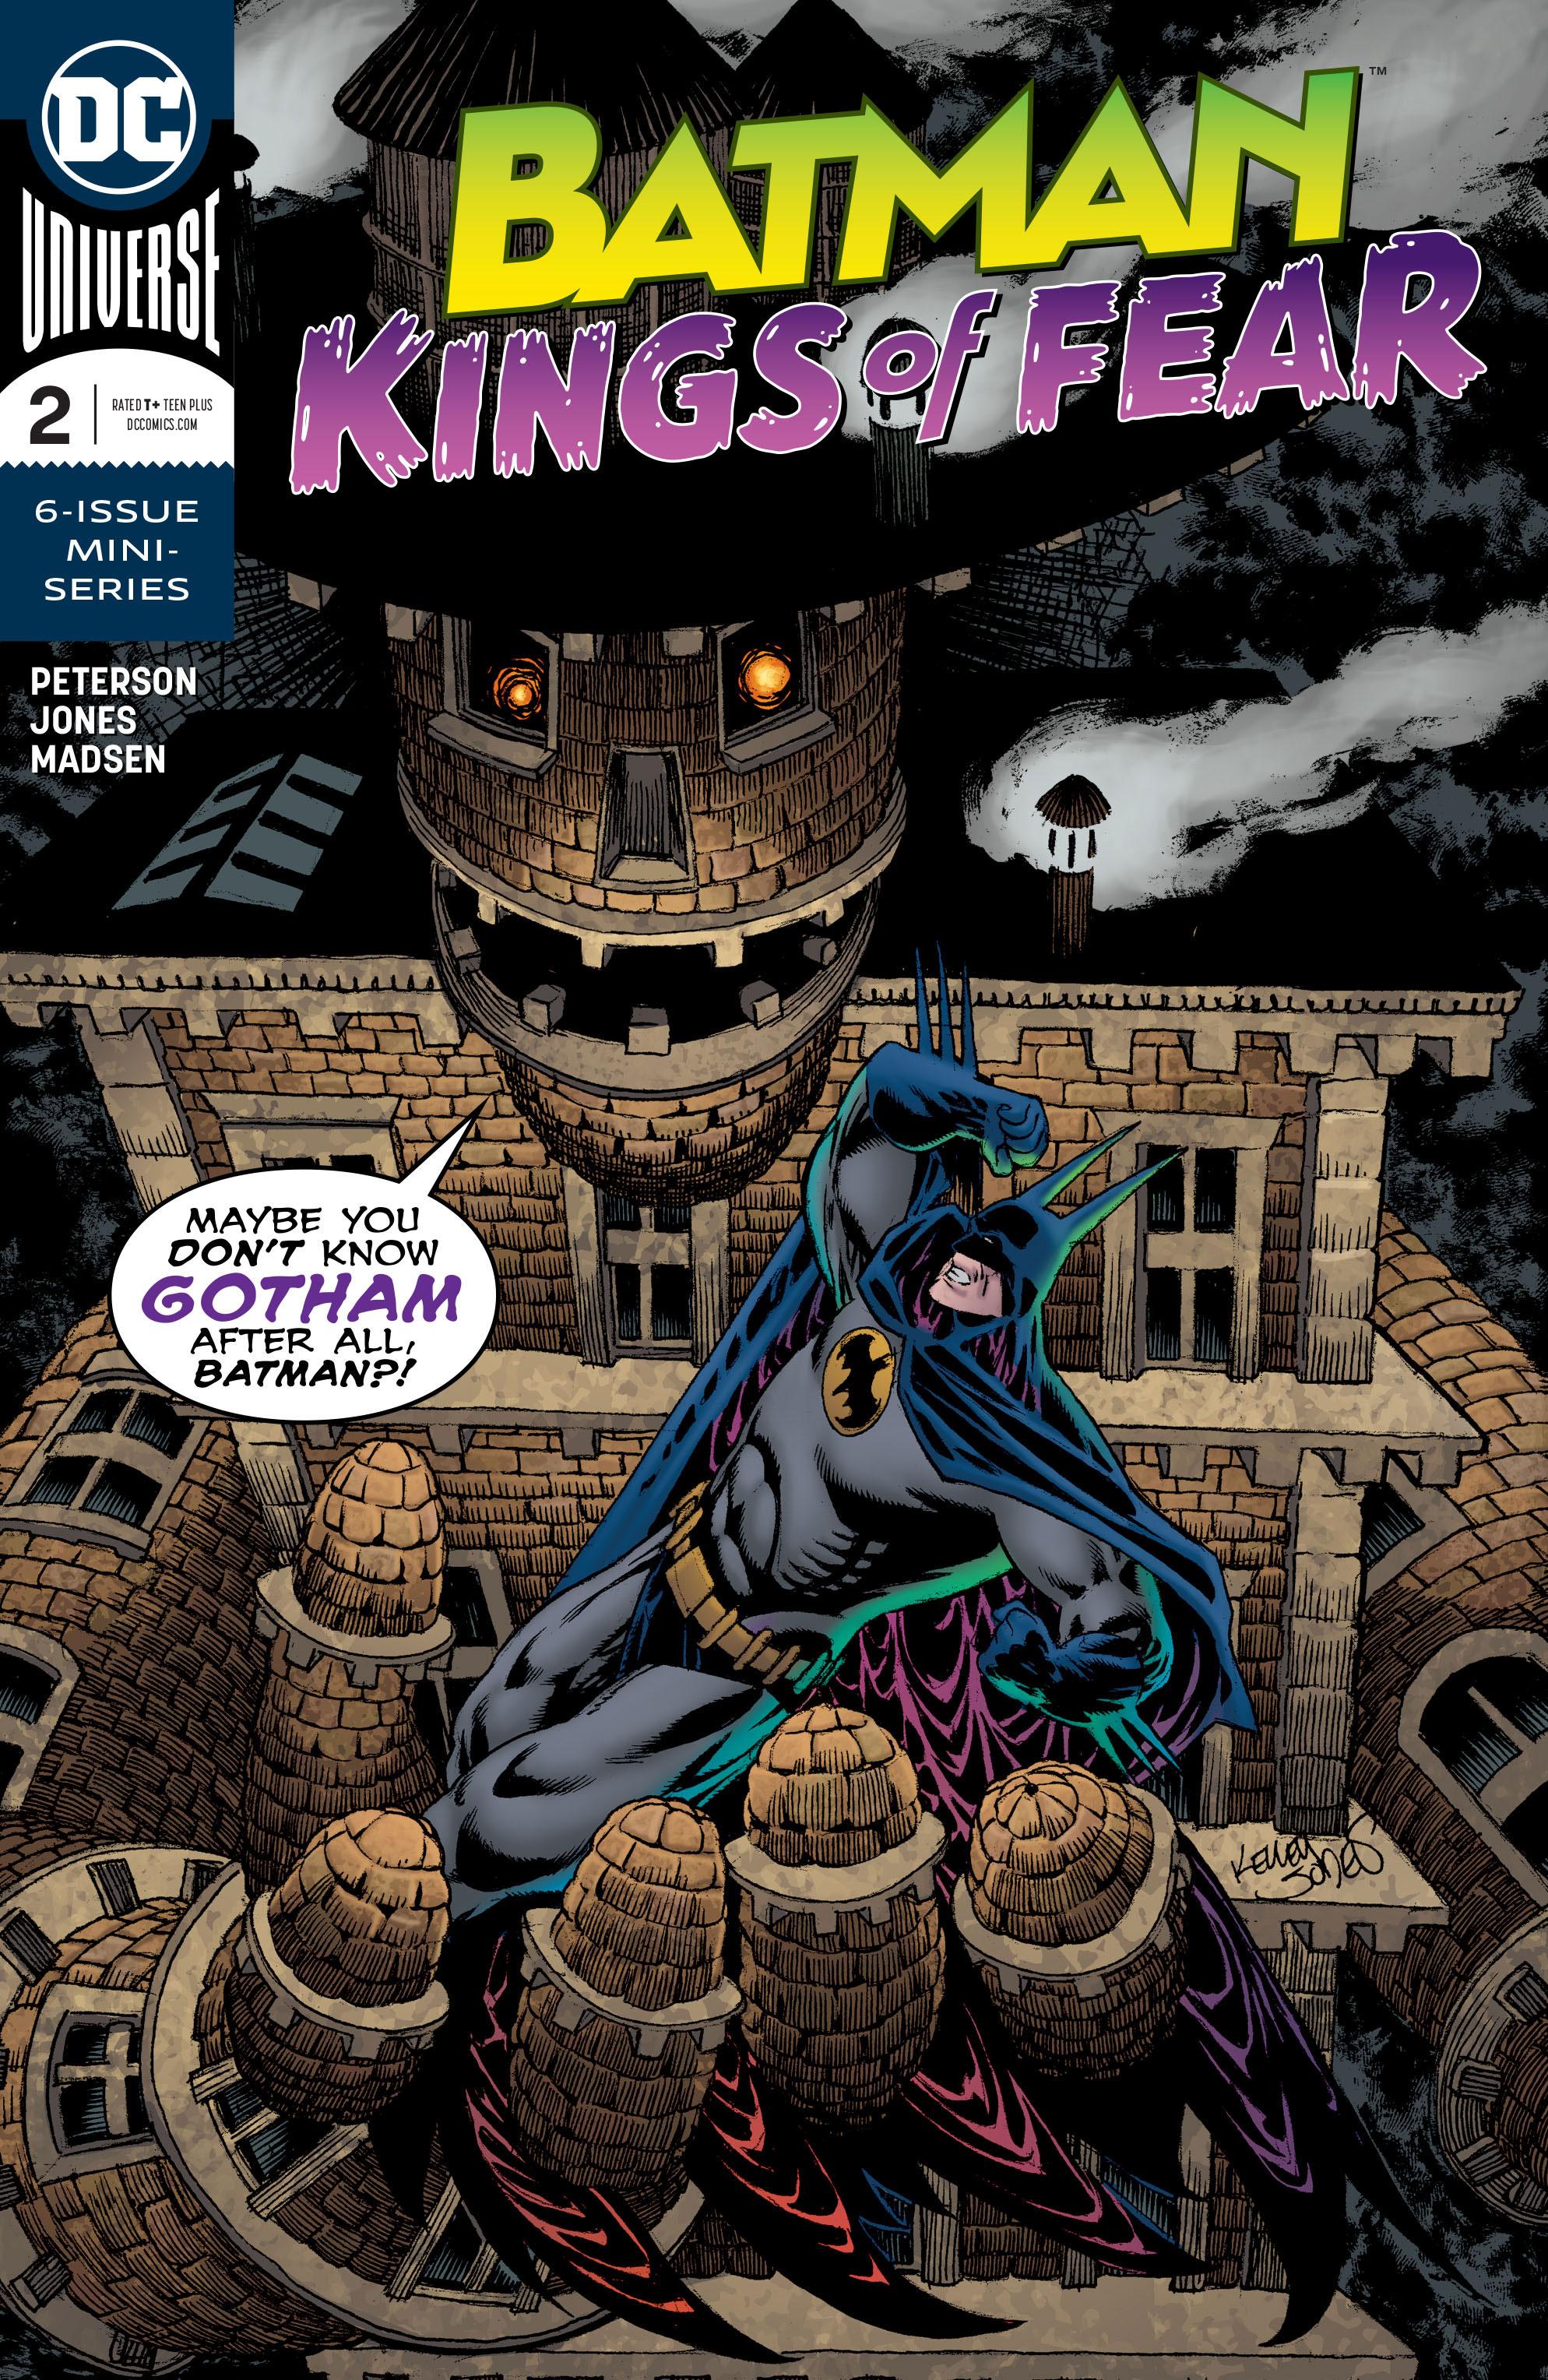 Batman: Kings of Fear Vol. 1 #2